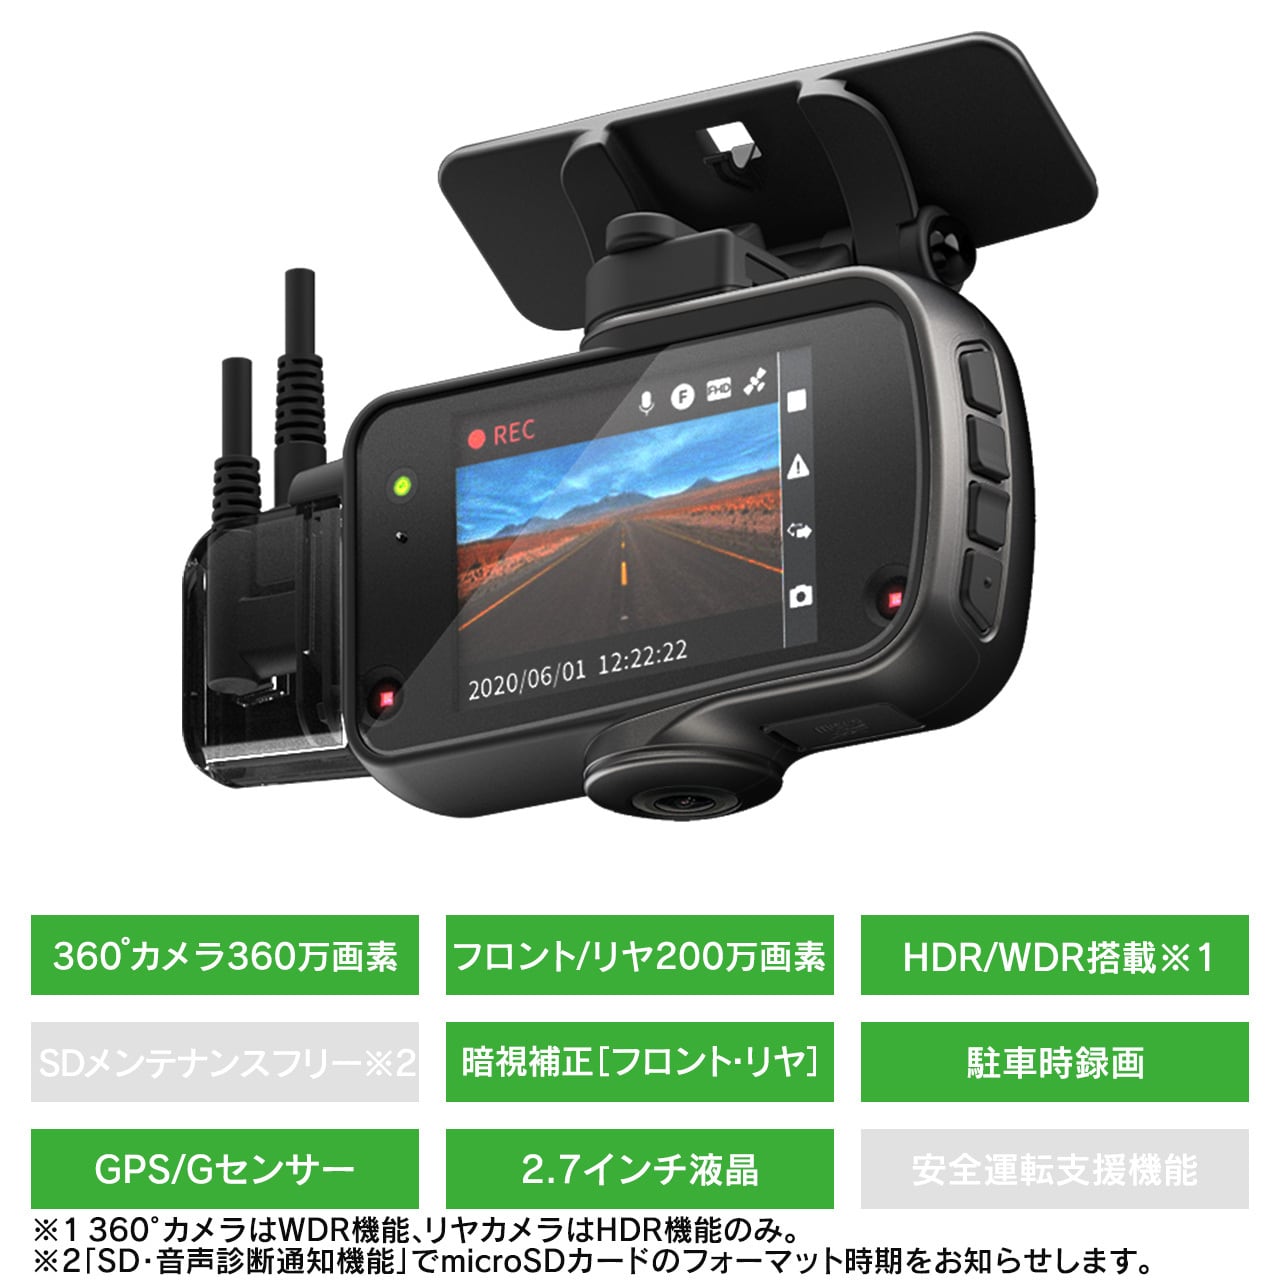 【未使用】トヨタTZ カーメイト TZ-DR300 360℃カメラ＋リヤドラレコ